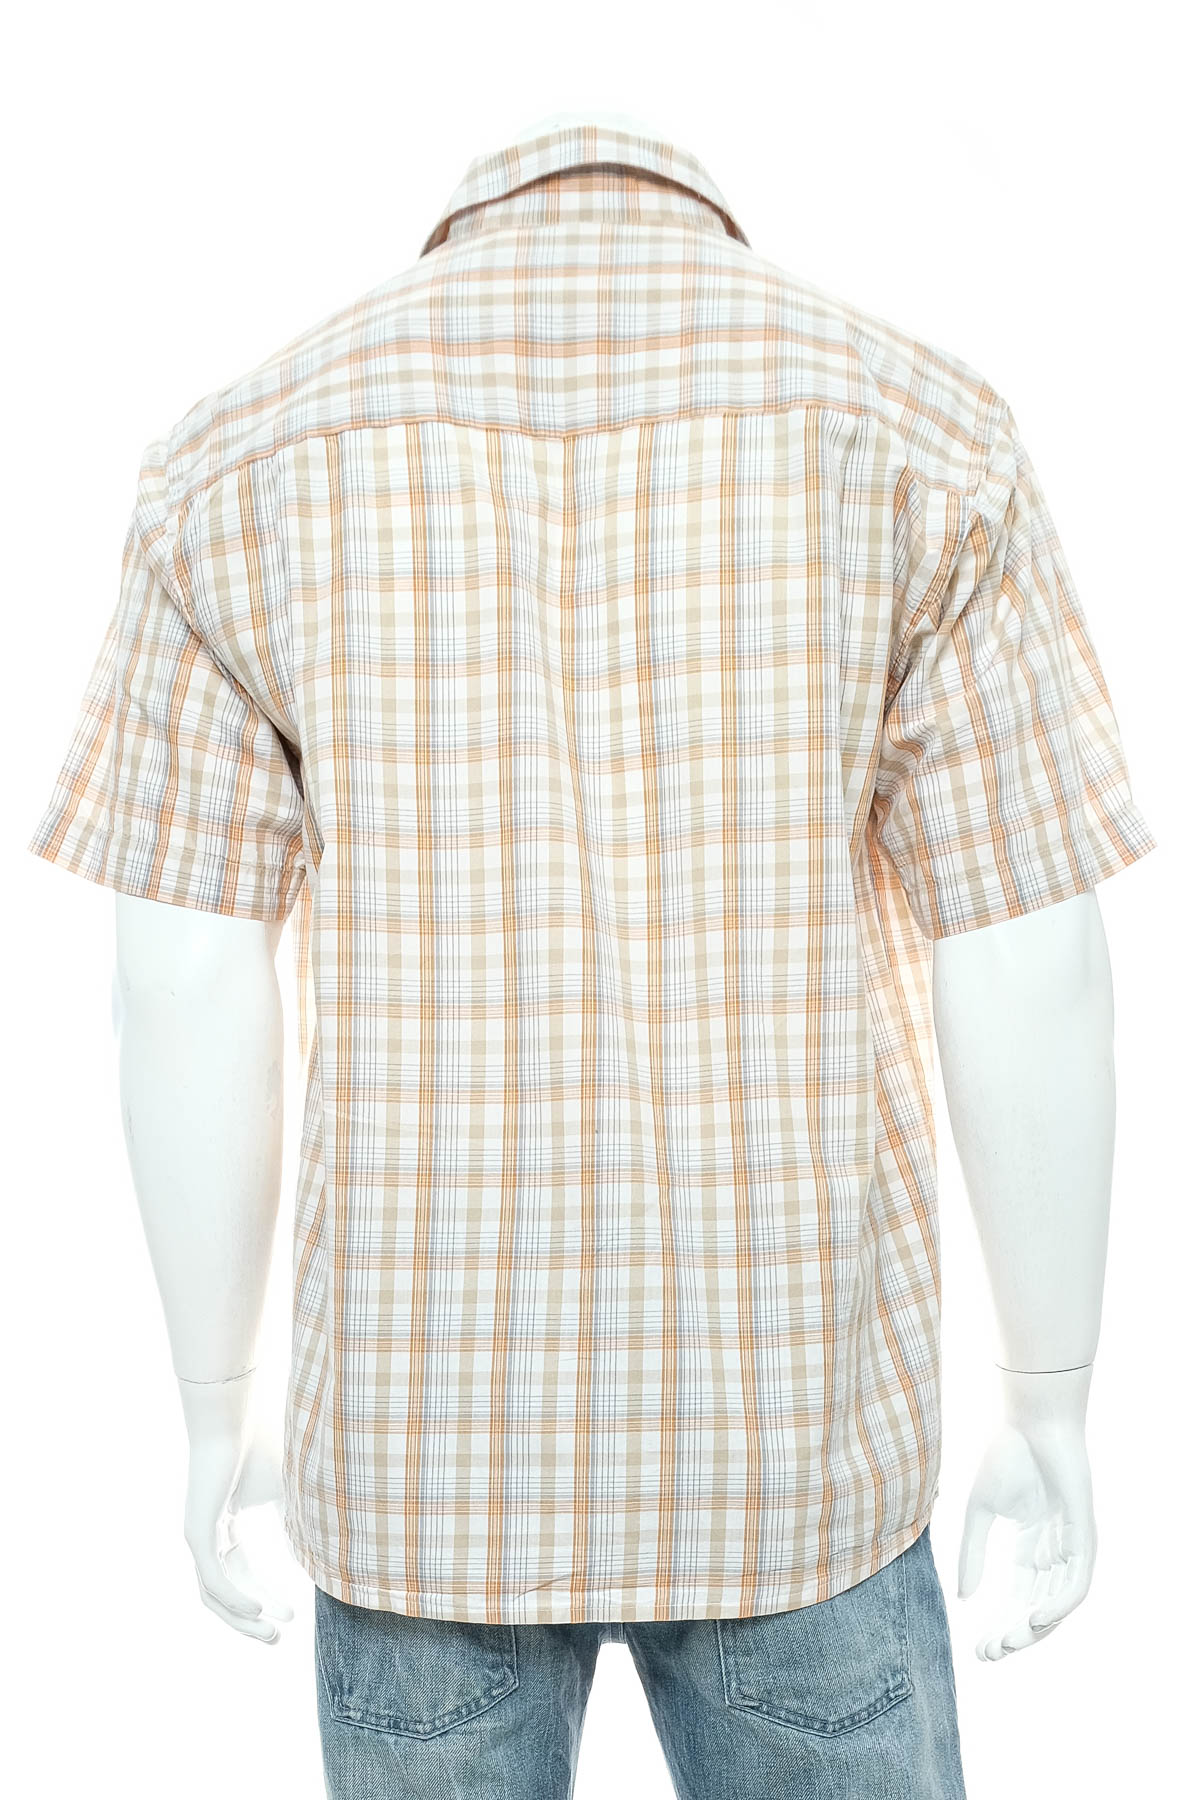 Men's shirt - Port Louis - 1